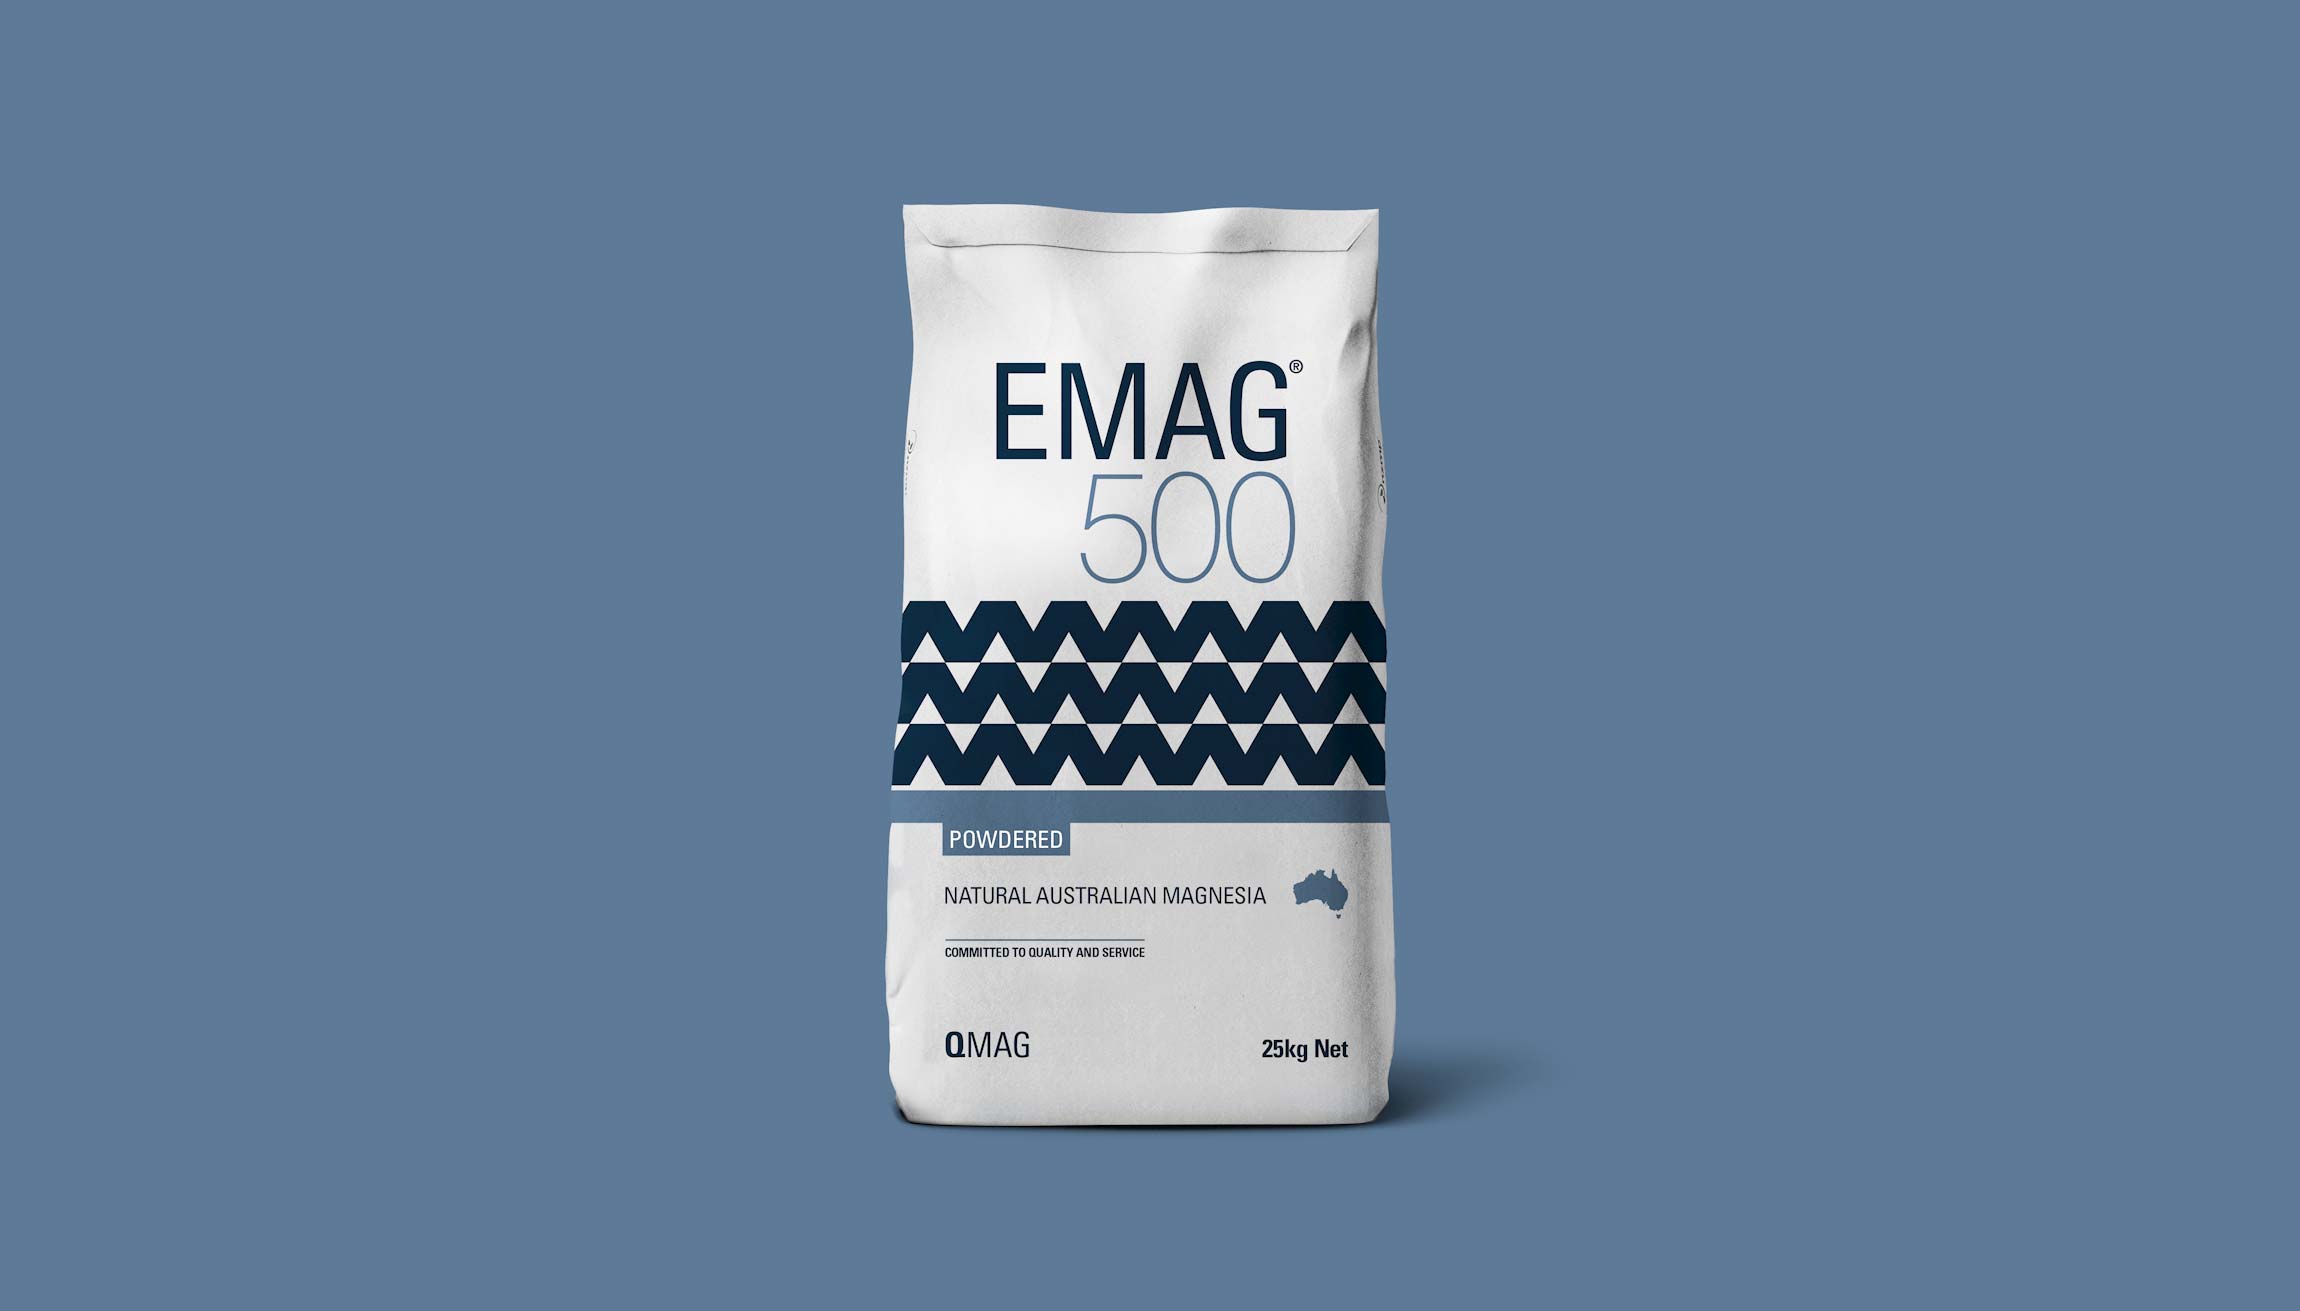 Qmag Magnesium Packaging Re-Design